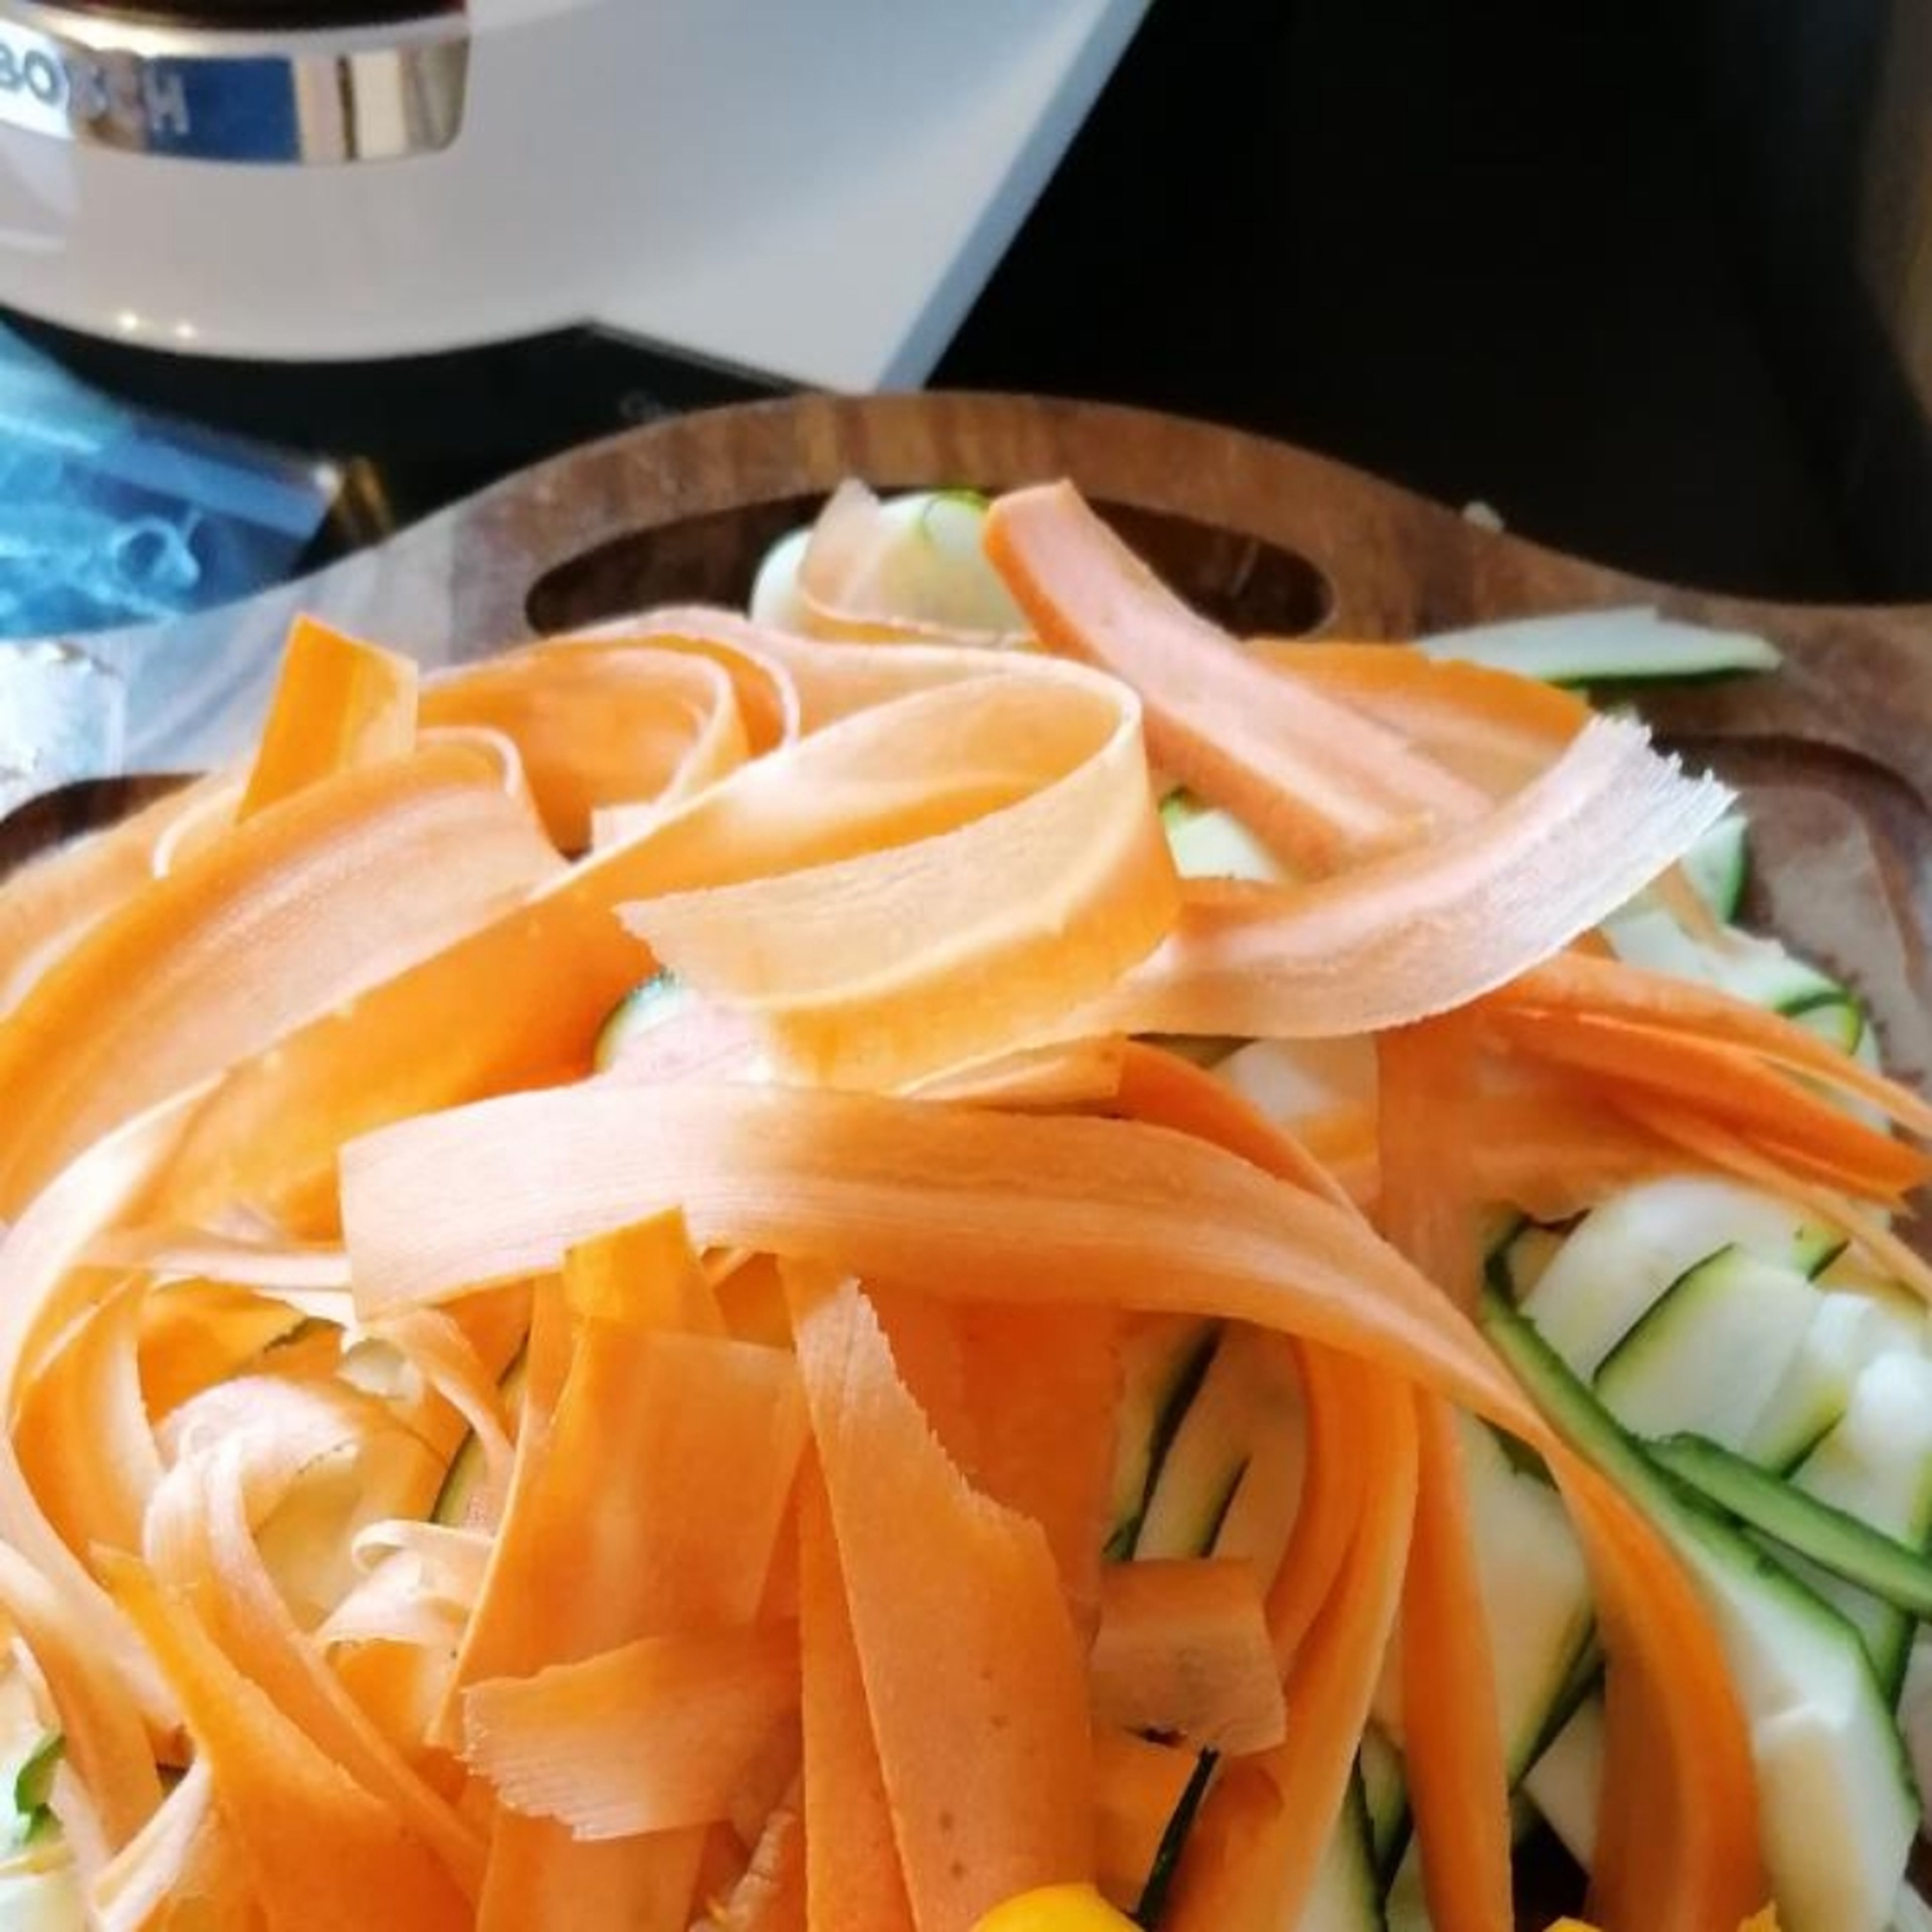 In der Zwischenzeit die Zucchini und Karotte vierteln und mit einem Hobel in dünne Streifen hobeln oder mit einem Messer in feine Streifen schneiden.